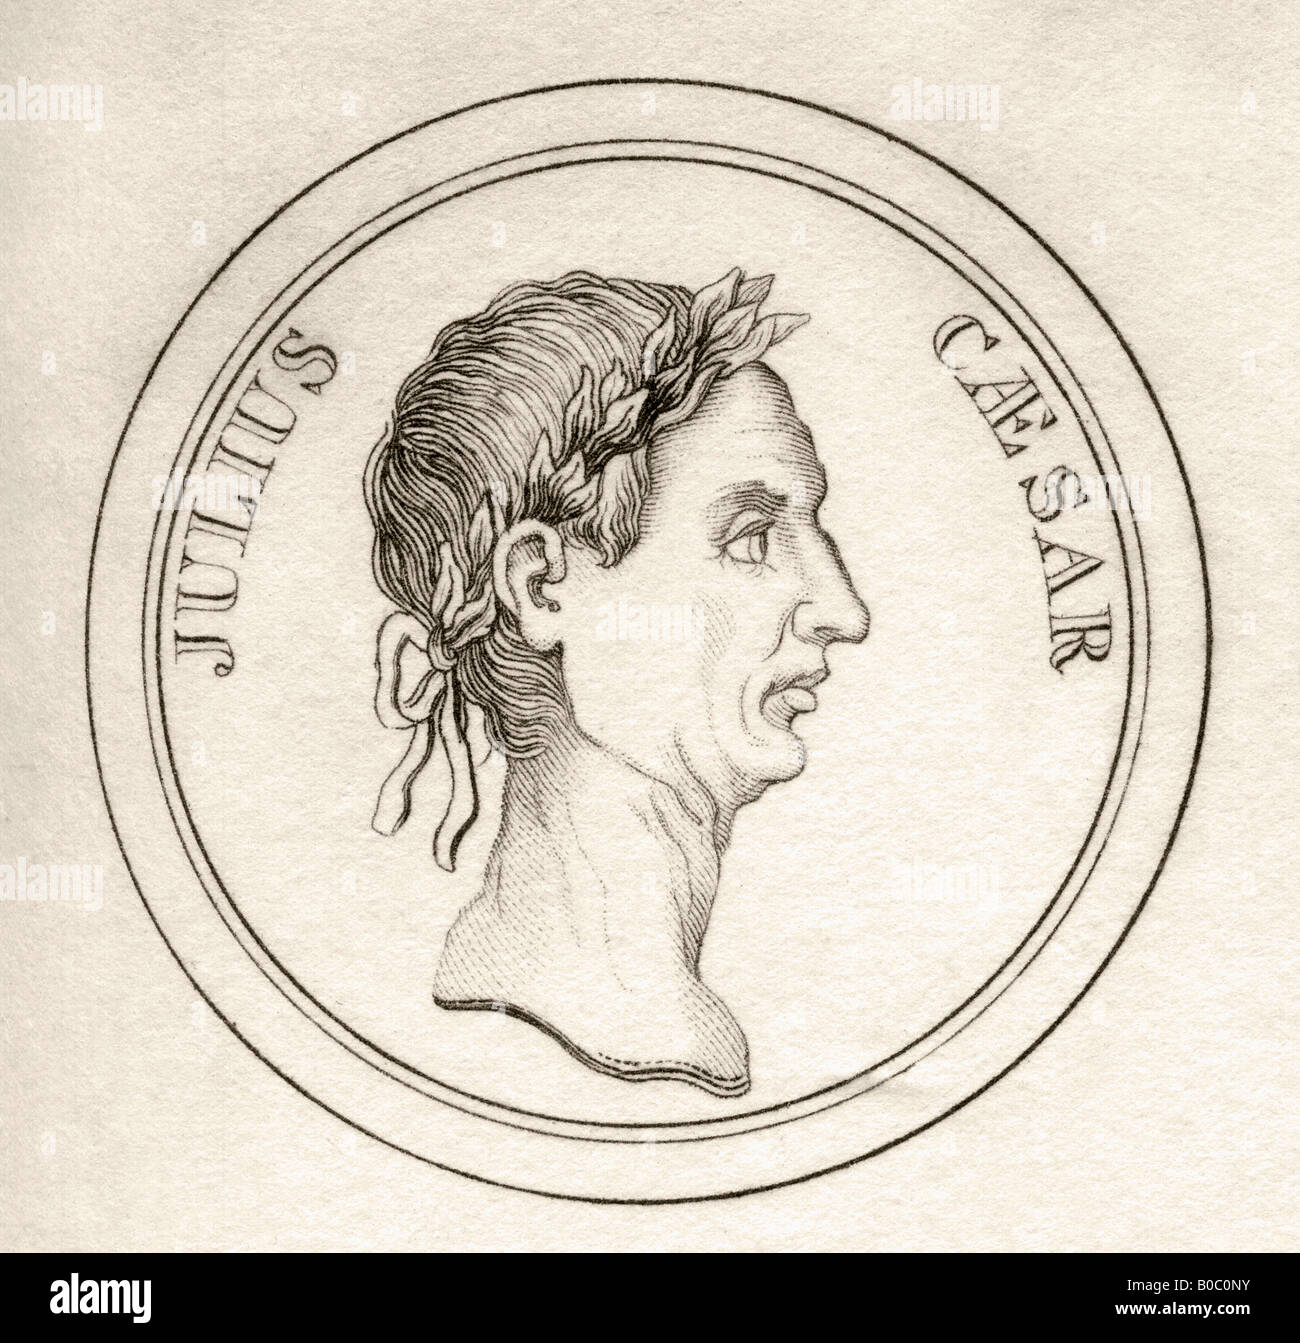 Gaius Julius Caesar, BC100 - 44. Général romain, dictateur et homme d'État. Tiré du livre Crabbs Historical Dictionary, publié en 1825. Banque D'Images